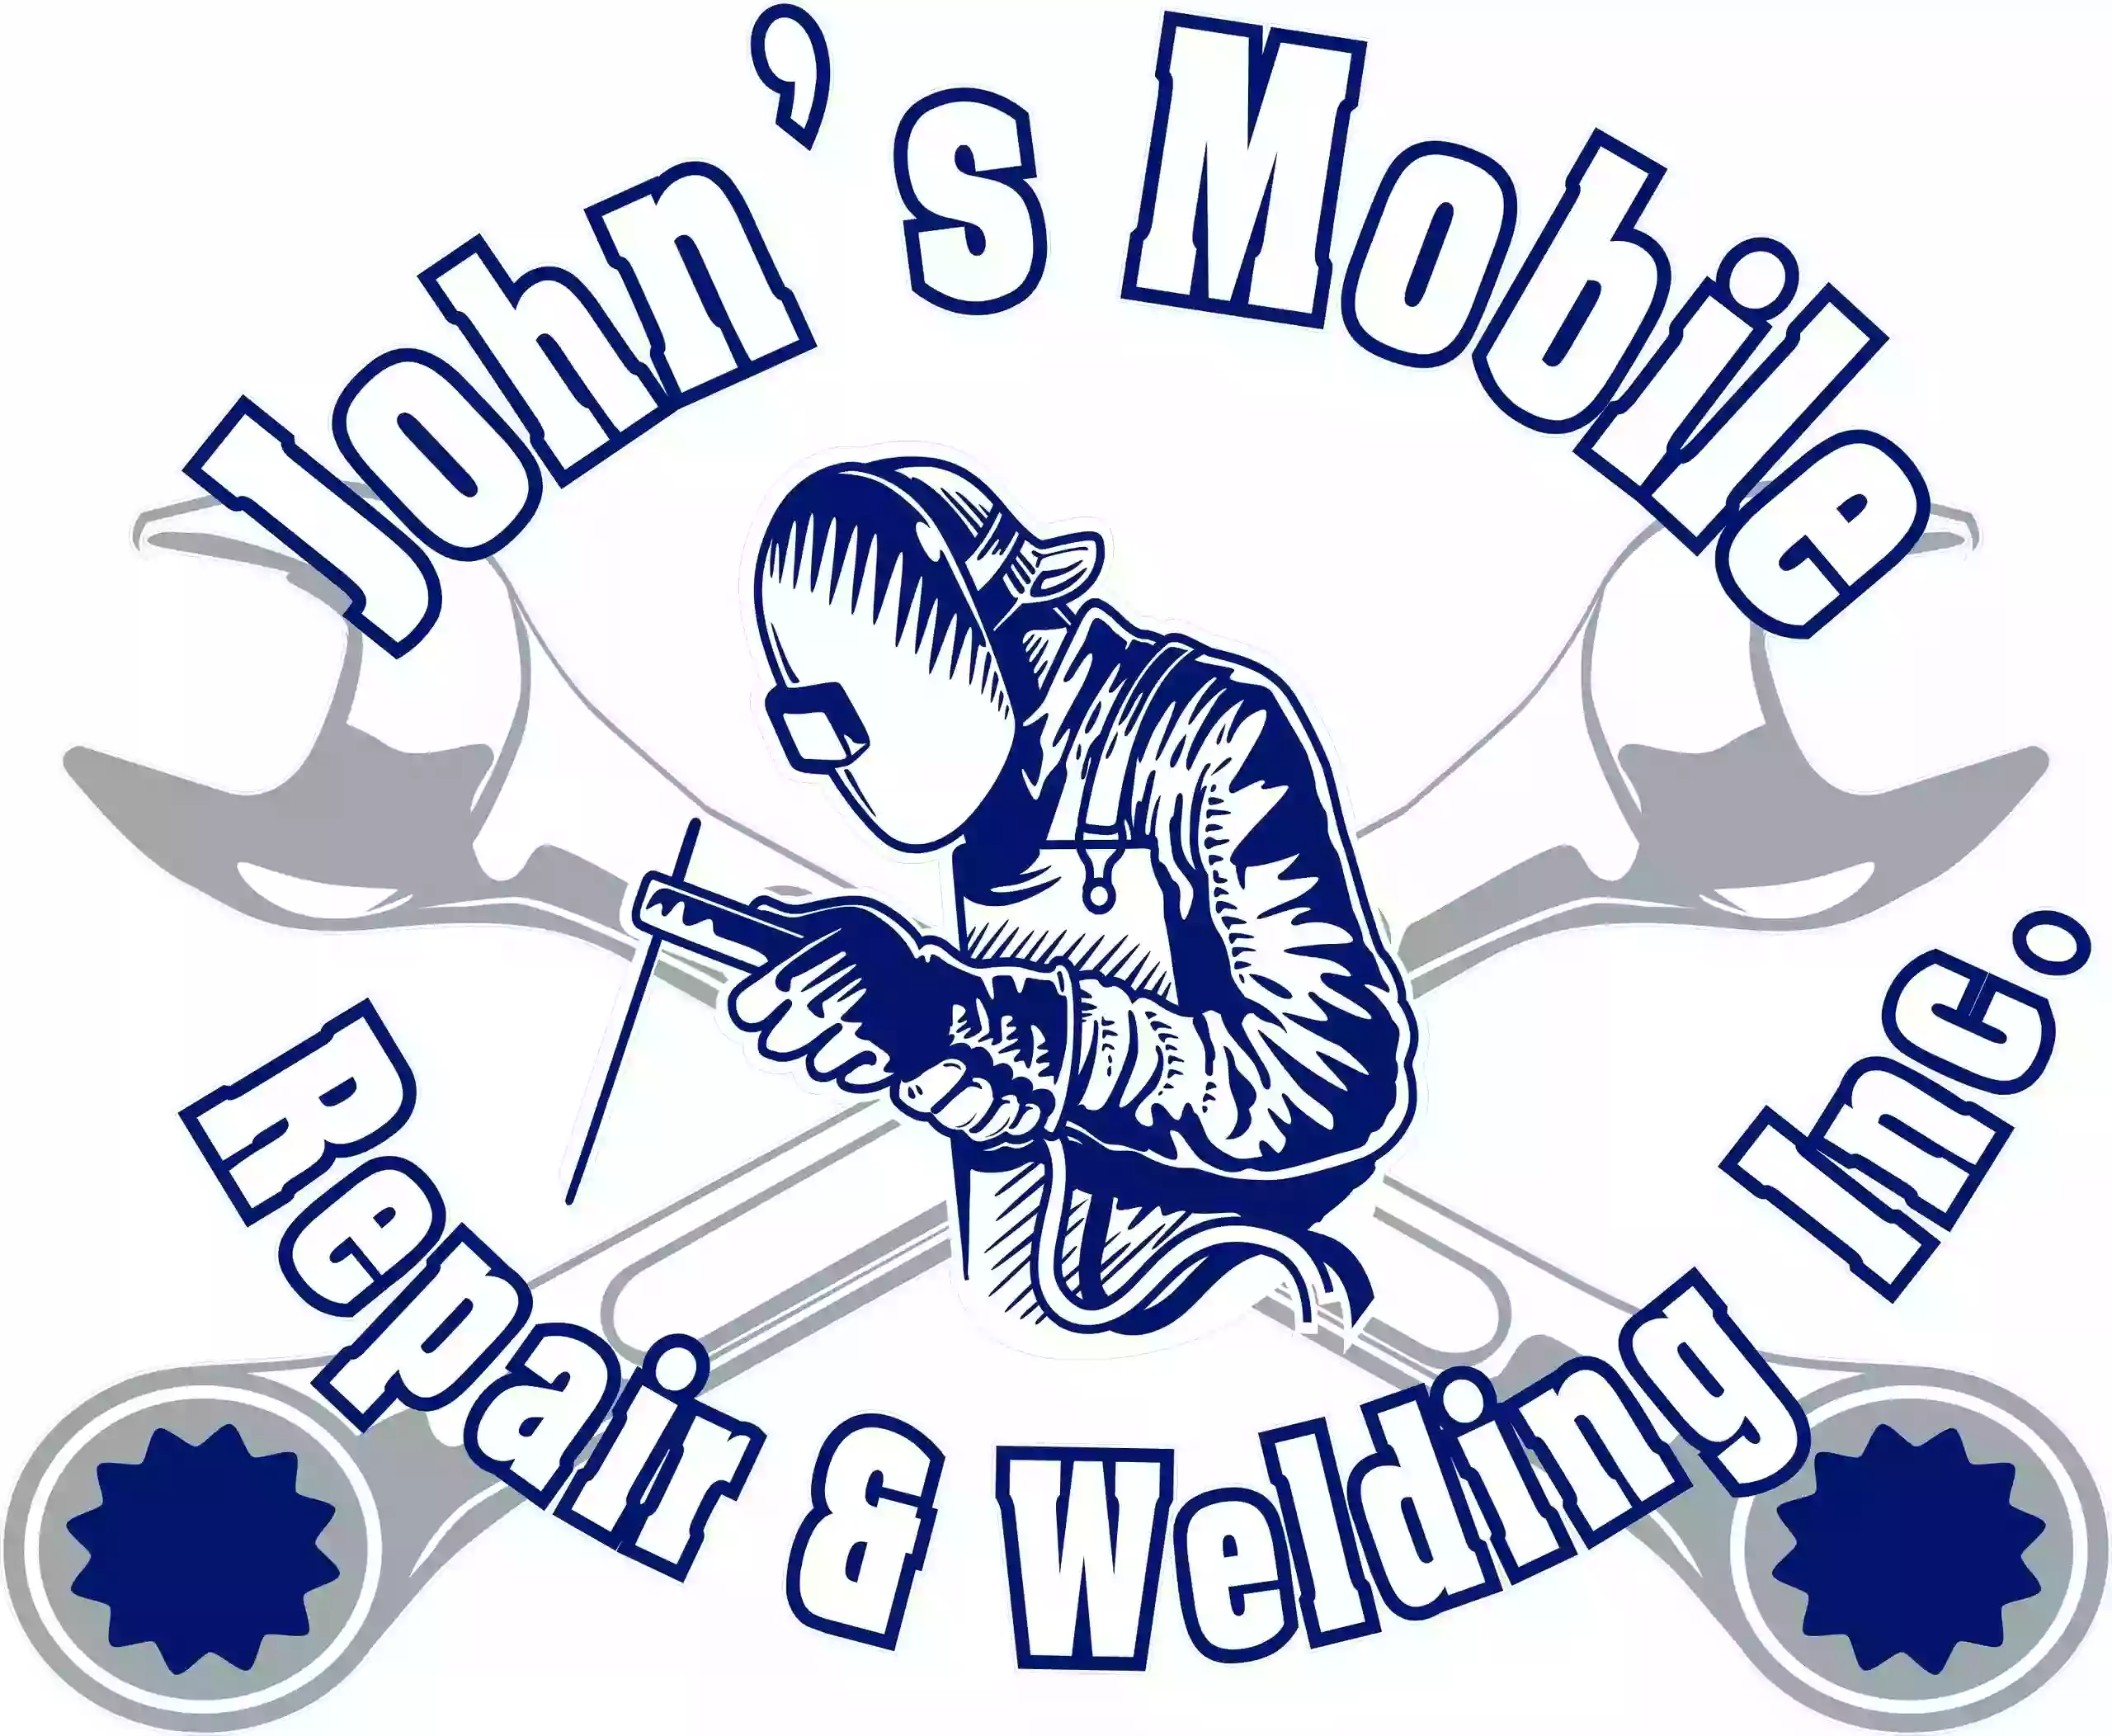 John’s Mobile Repair and Welding Inc.